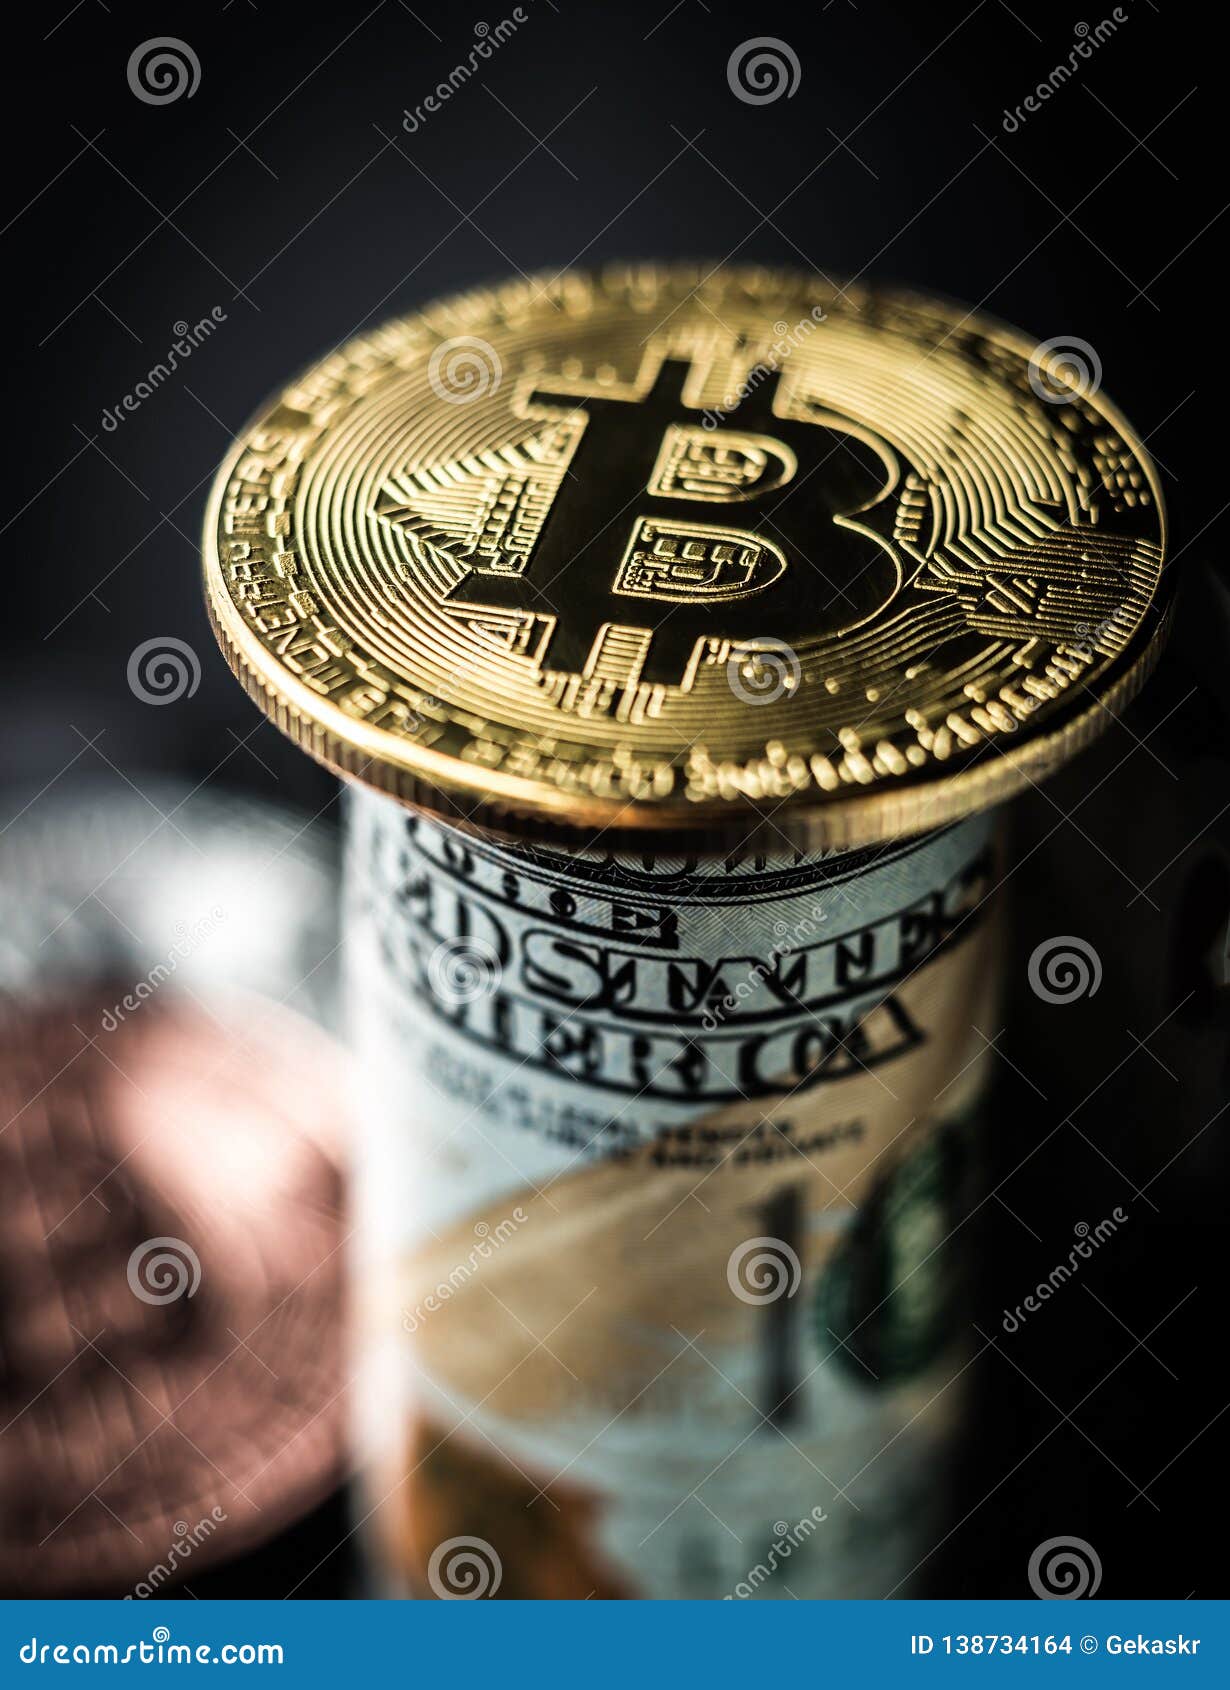 100 or bitcoin